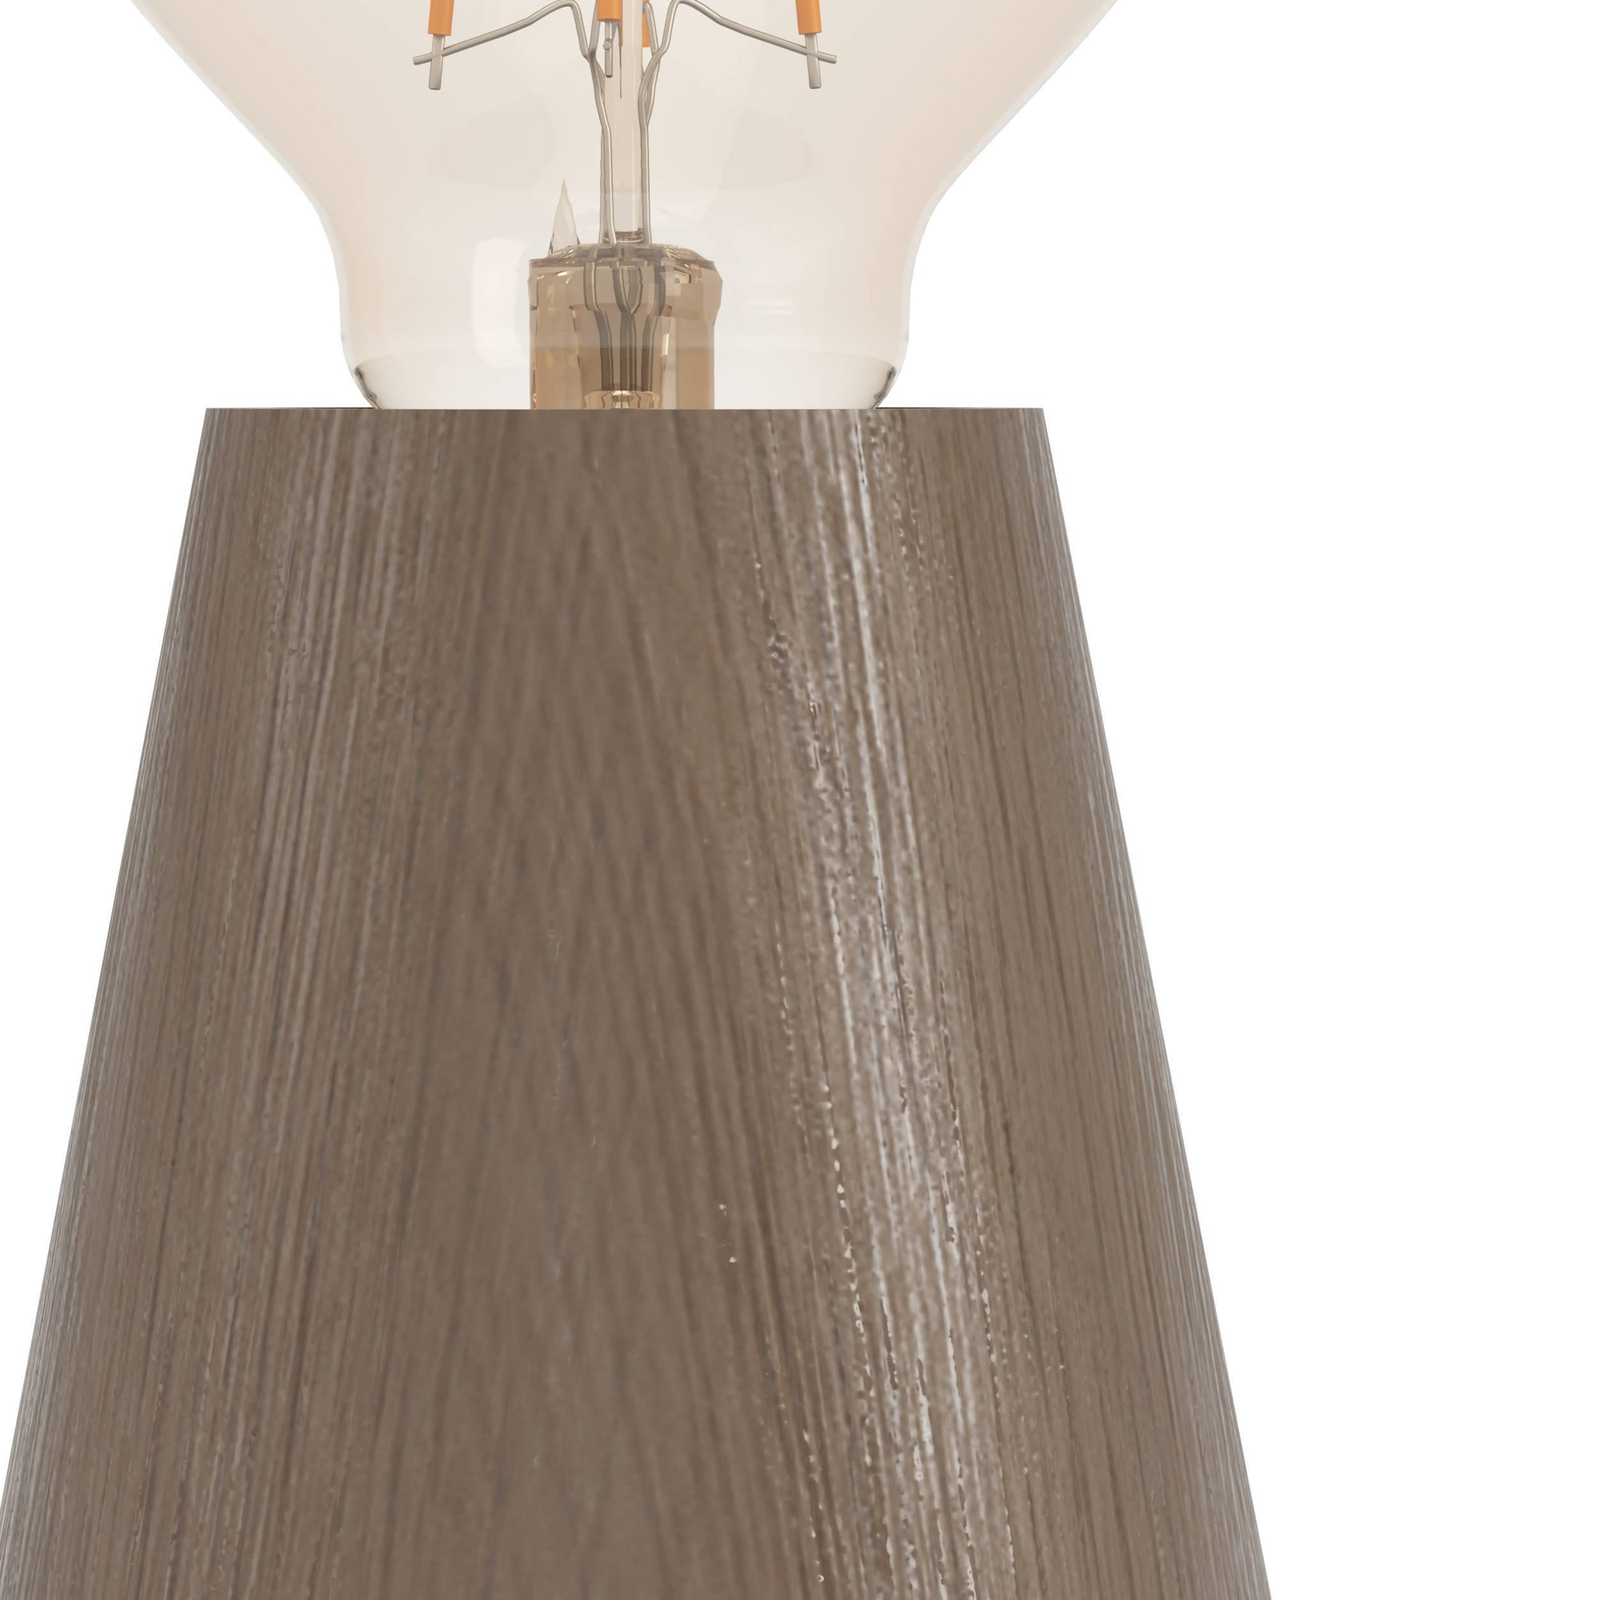 Asby bordlampe, mørkt tre, høyde 10 cm, tre